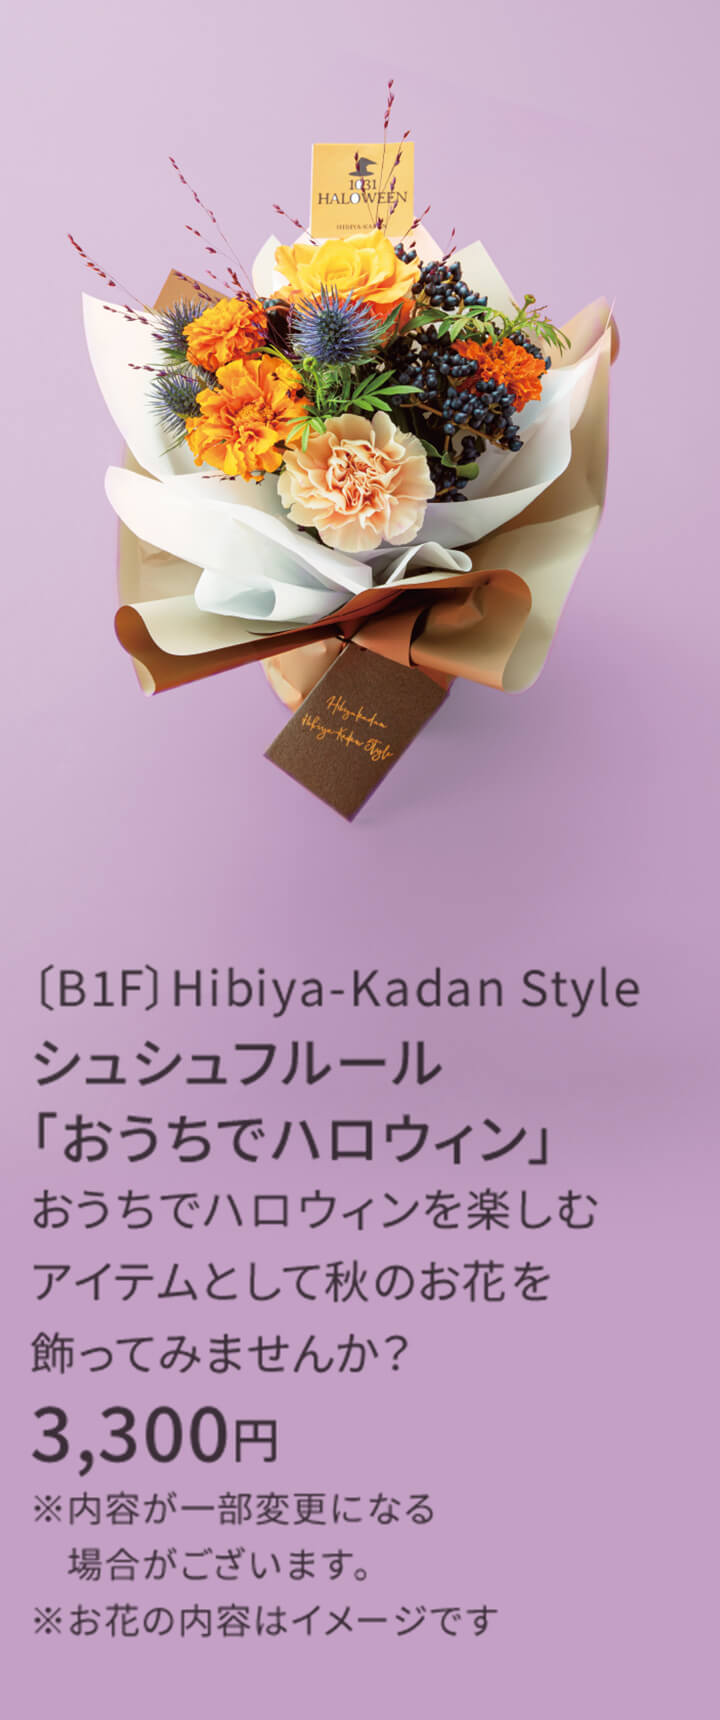 〔B1F〕Hibiya-Kadan Style シュシュフルール「おうちでハロウィン」 おうちでハロウィンを楽しむアイテムとして秋のお花を飾ってみませんか？ 3,300円 ※内容が一部変更になる場合がございます。※お花の内容はイメージです